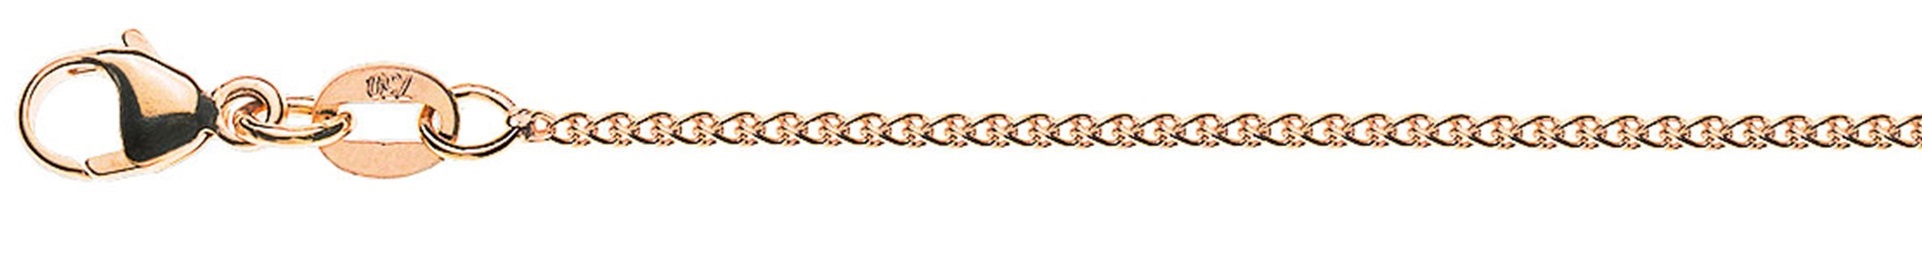 AURONOS Prestige Necklace rose gold 18K cable chain 60cm 1.2mm